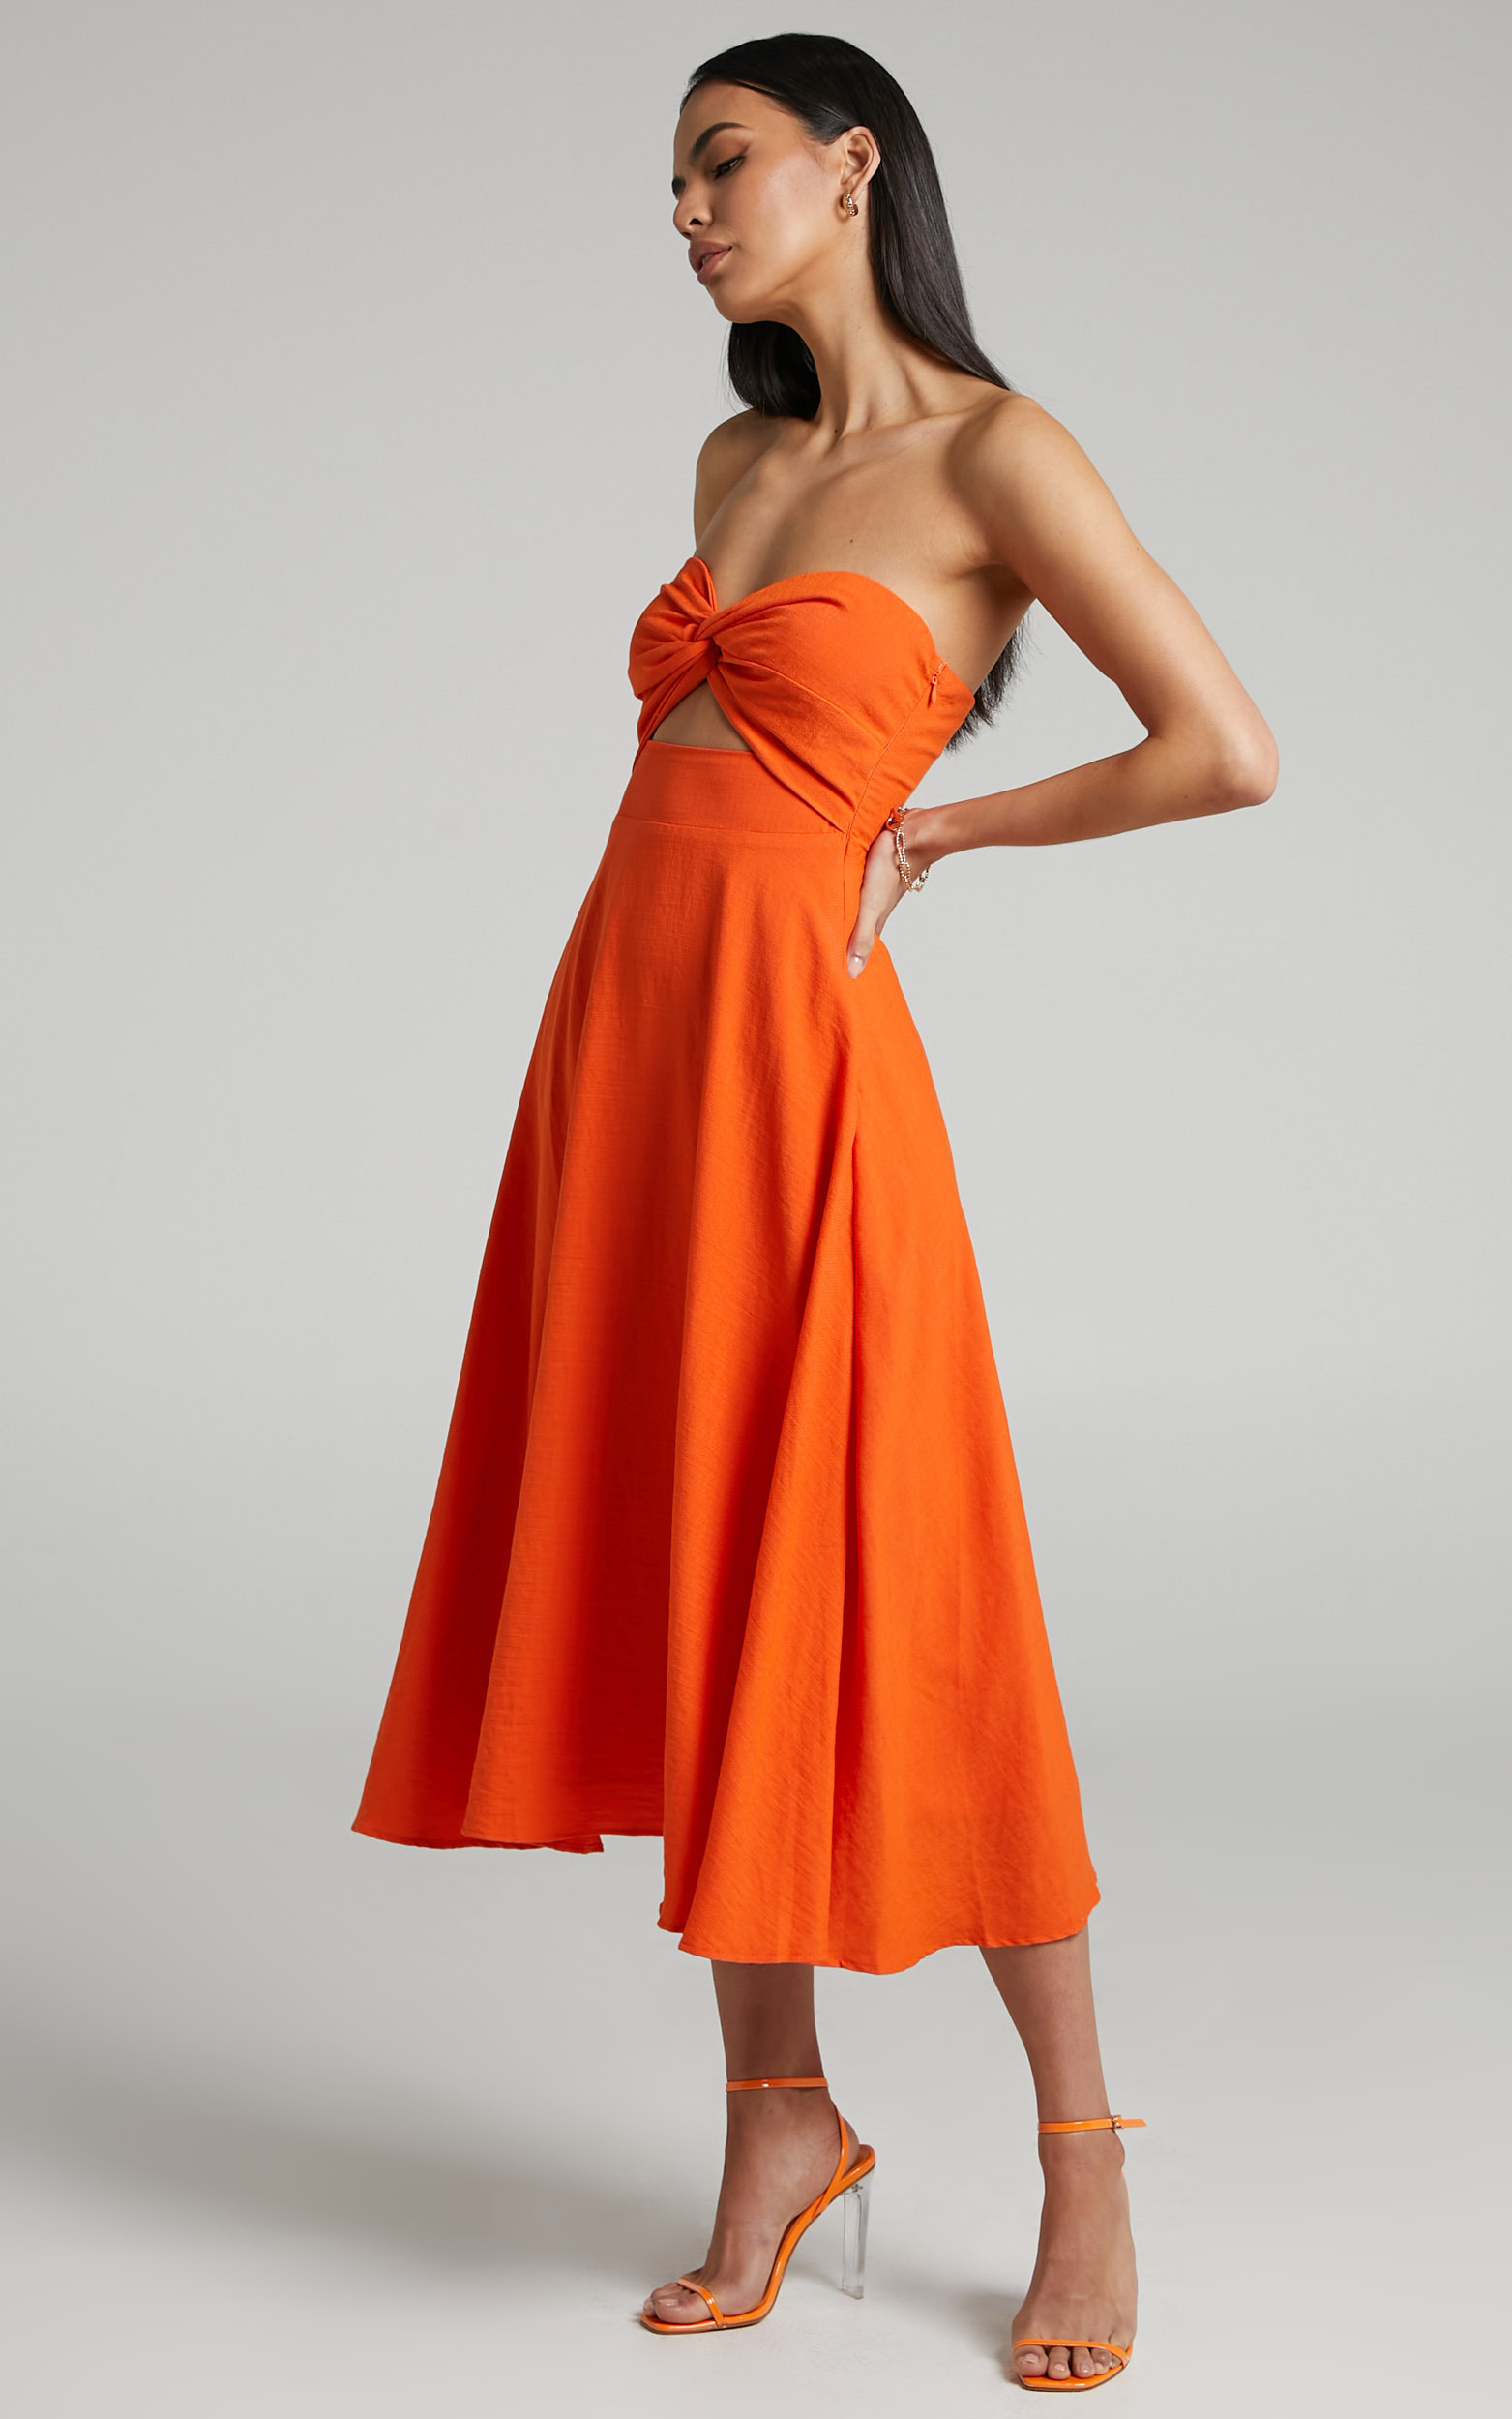 Avie Twist Strapless Cocktail Dress in Orange | Showpo USA